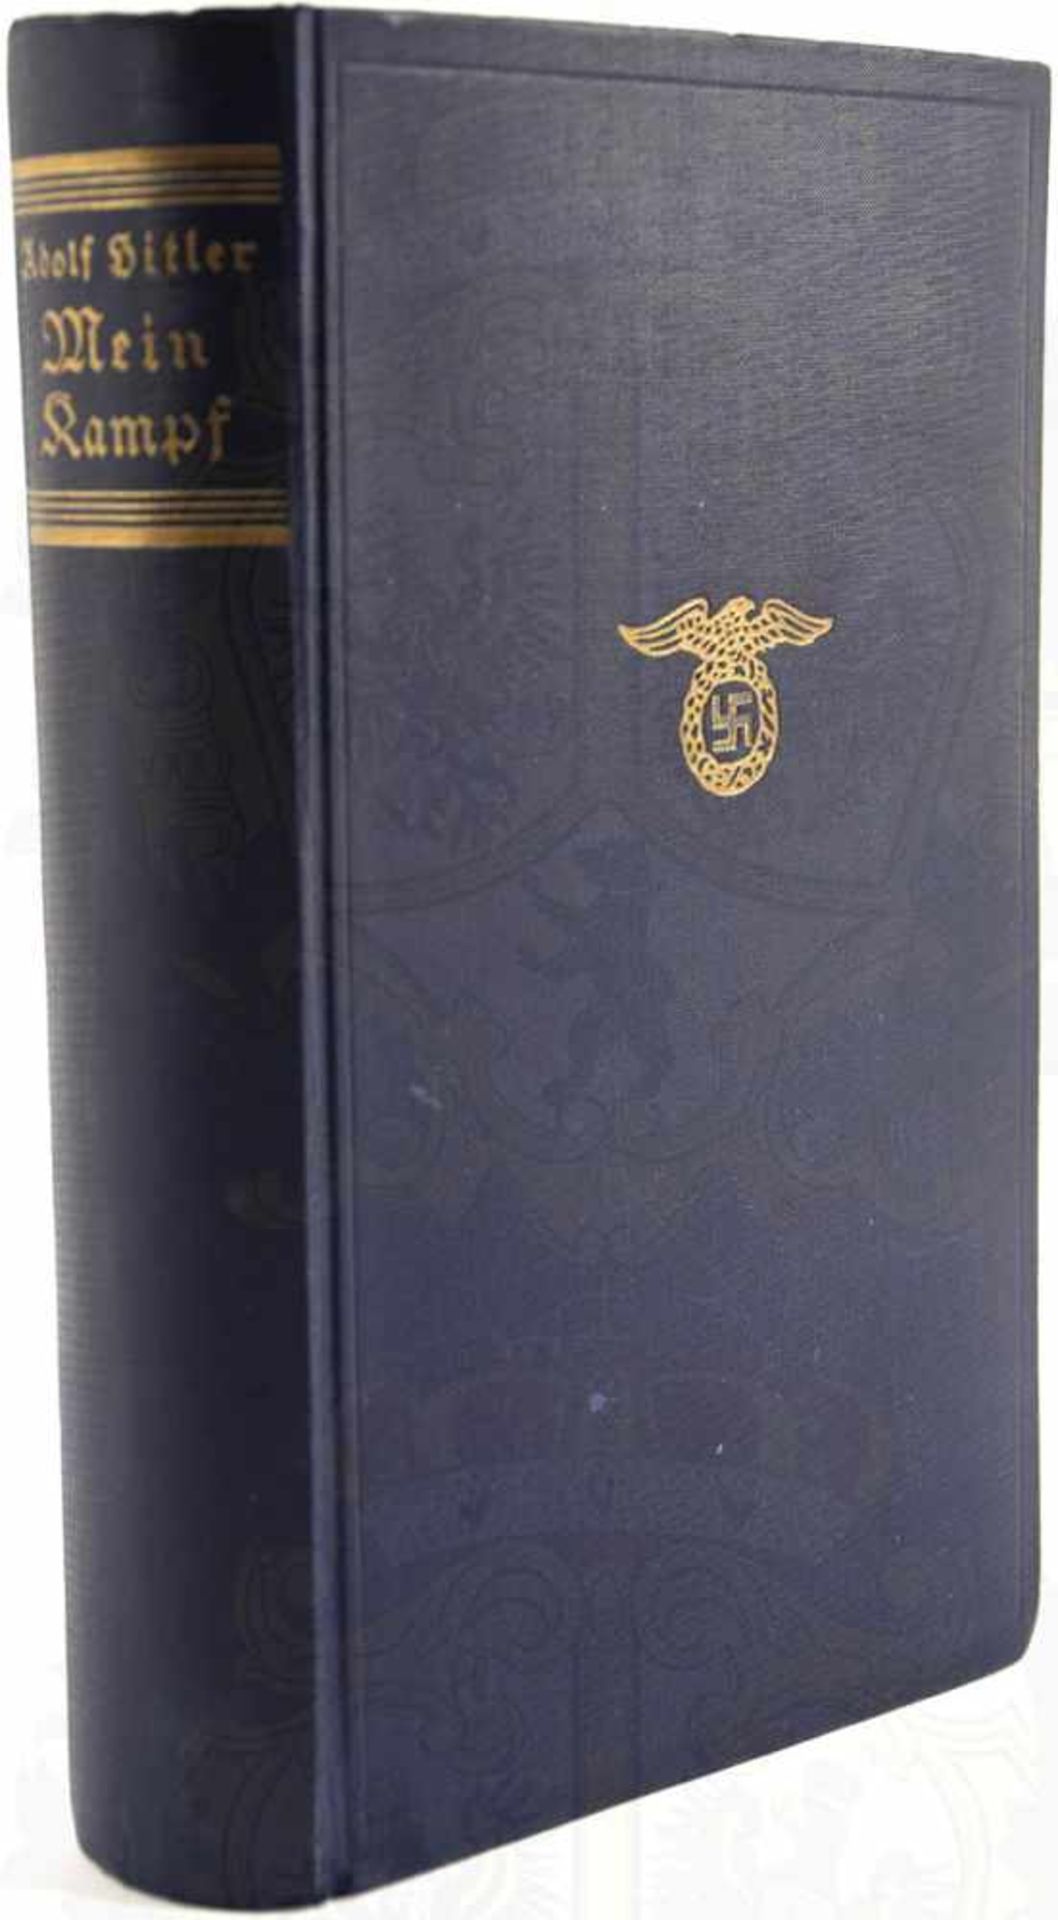 MEIN KAMPF, Adolf Hitler, Volksausgabe, Eher Verlag, 1935, Porträtbild, 781 S., Blanko-Vorsatz